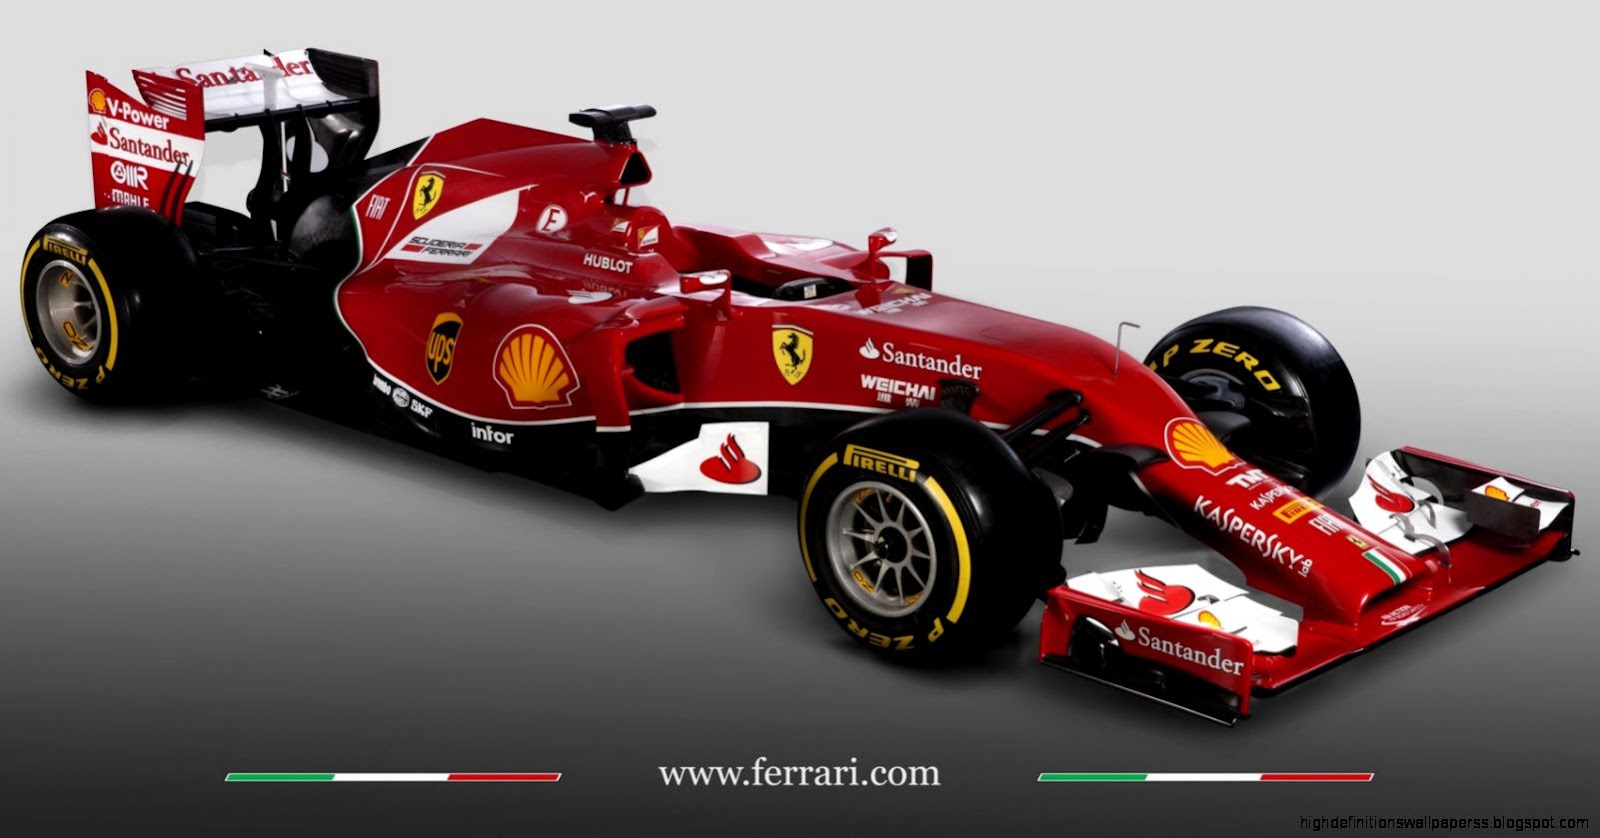 Ferrari F14T 2014 Wallpaper Hd